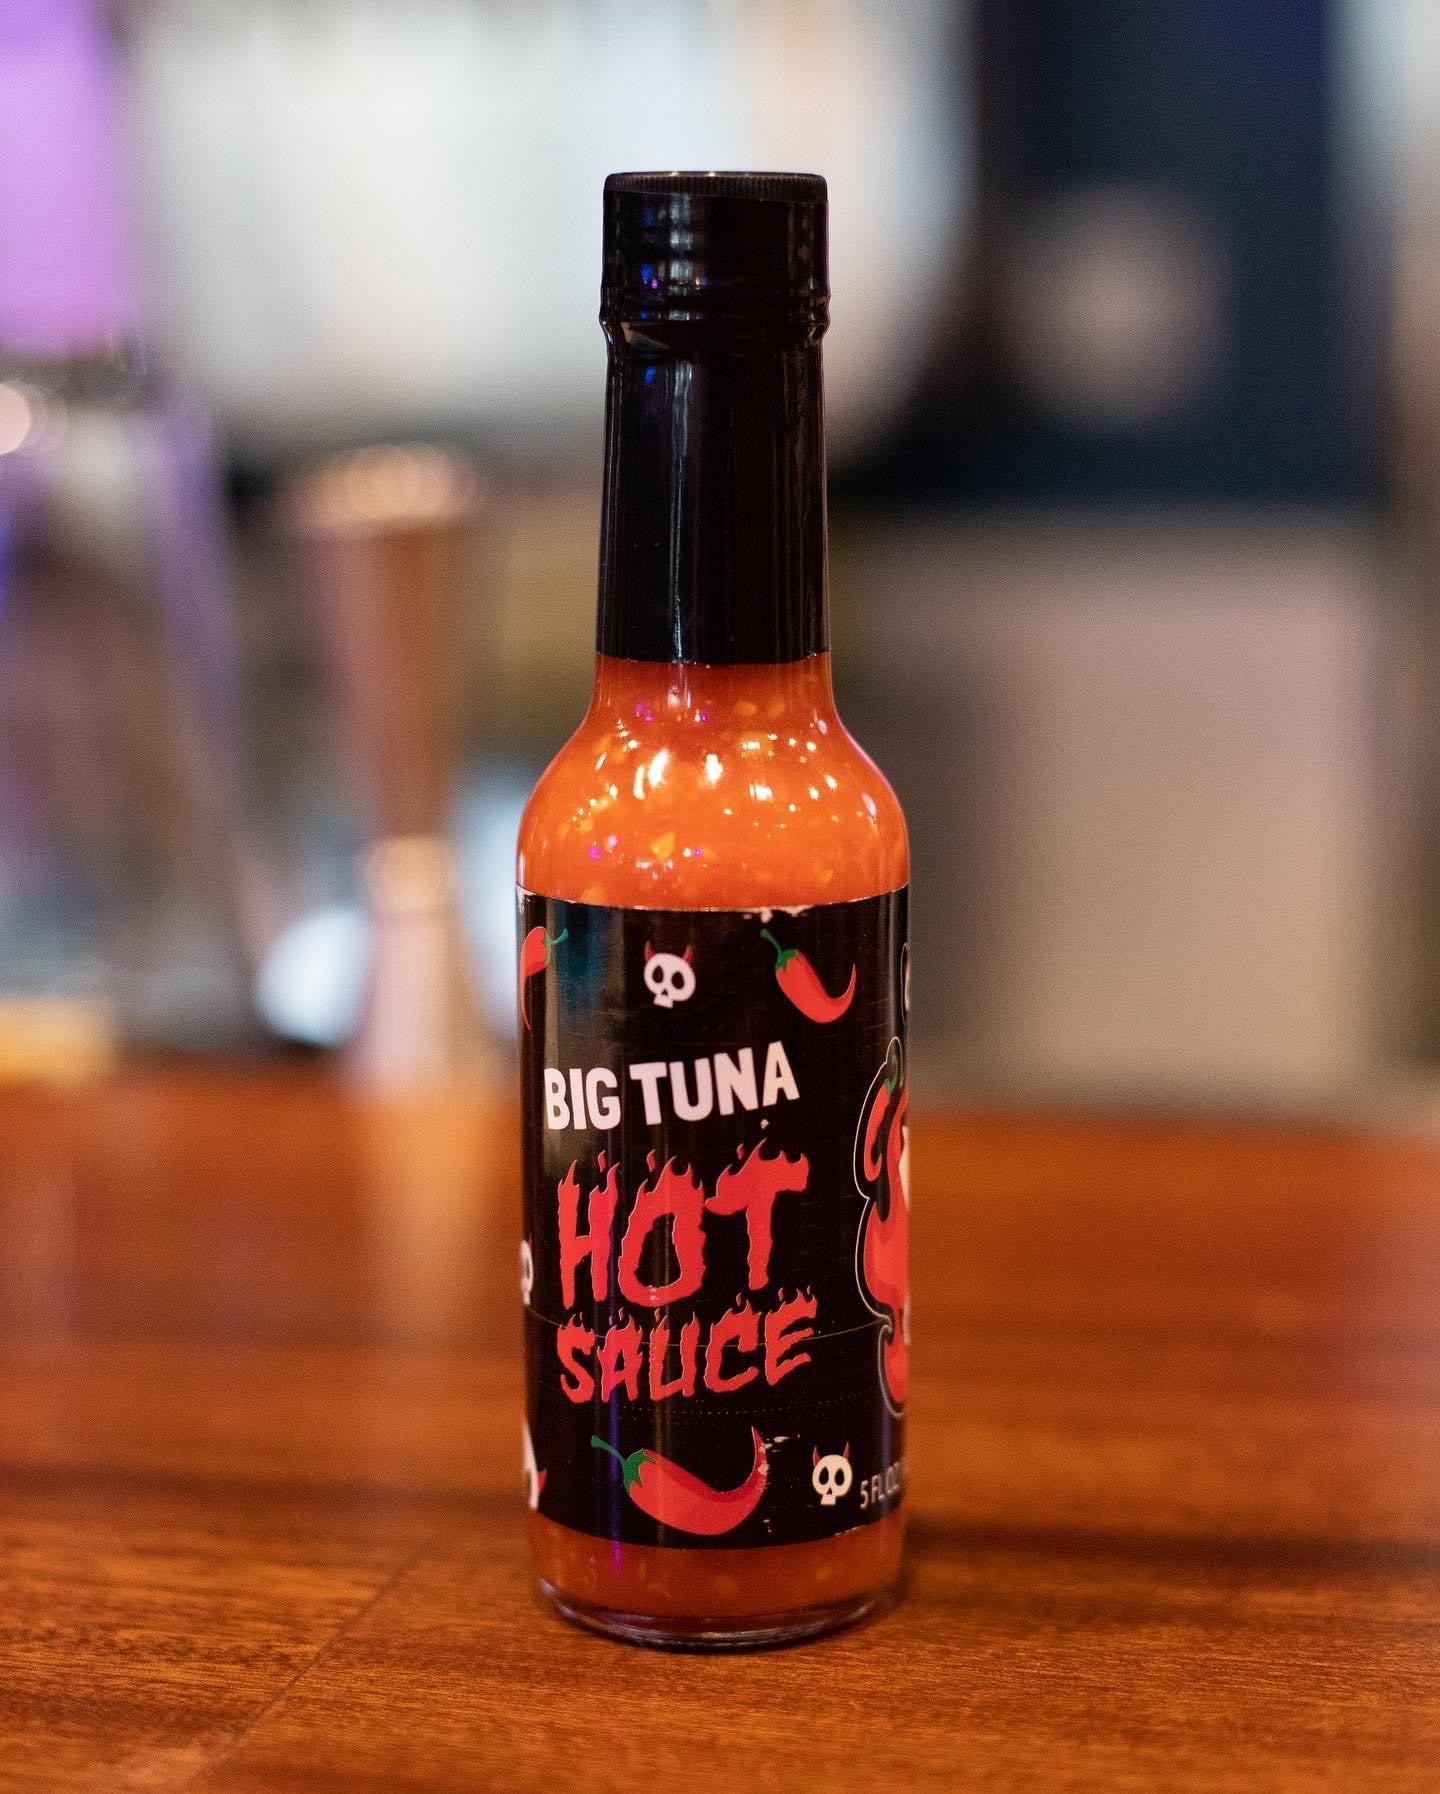 Big Tuna Hot Sauce (Habanero)